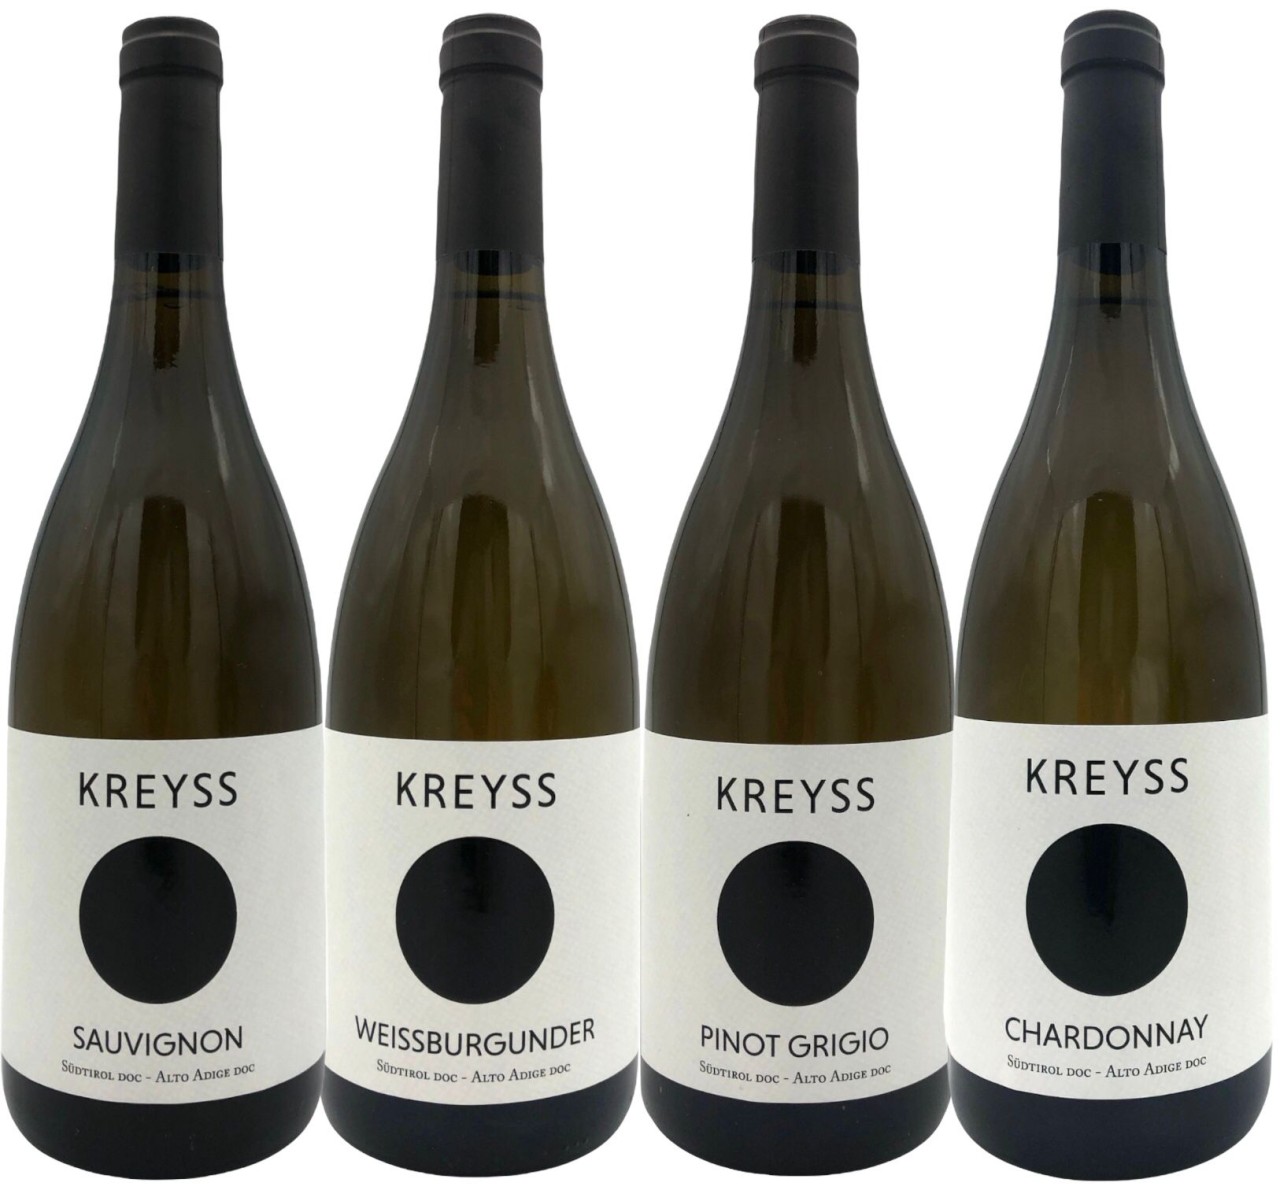 Südtiroler Kreyss Probierpaket - Chardonnay, Sauvignon Blanc, Weissburgunder, Pinot Grigio - 2020 (6